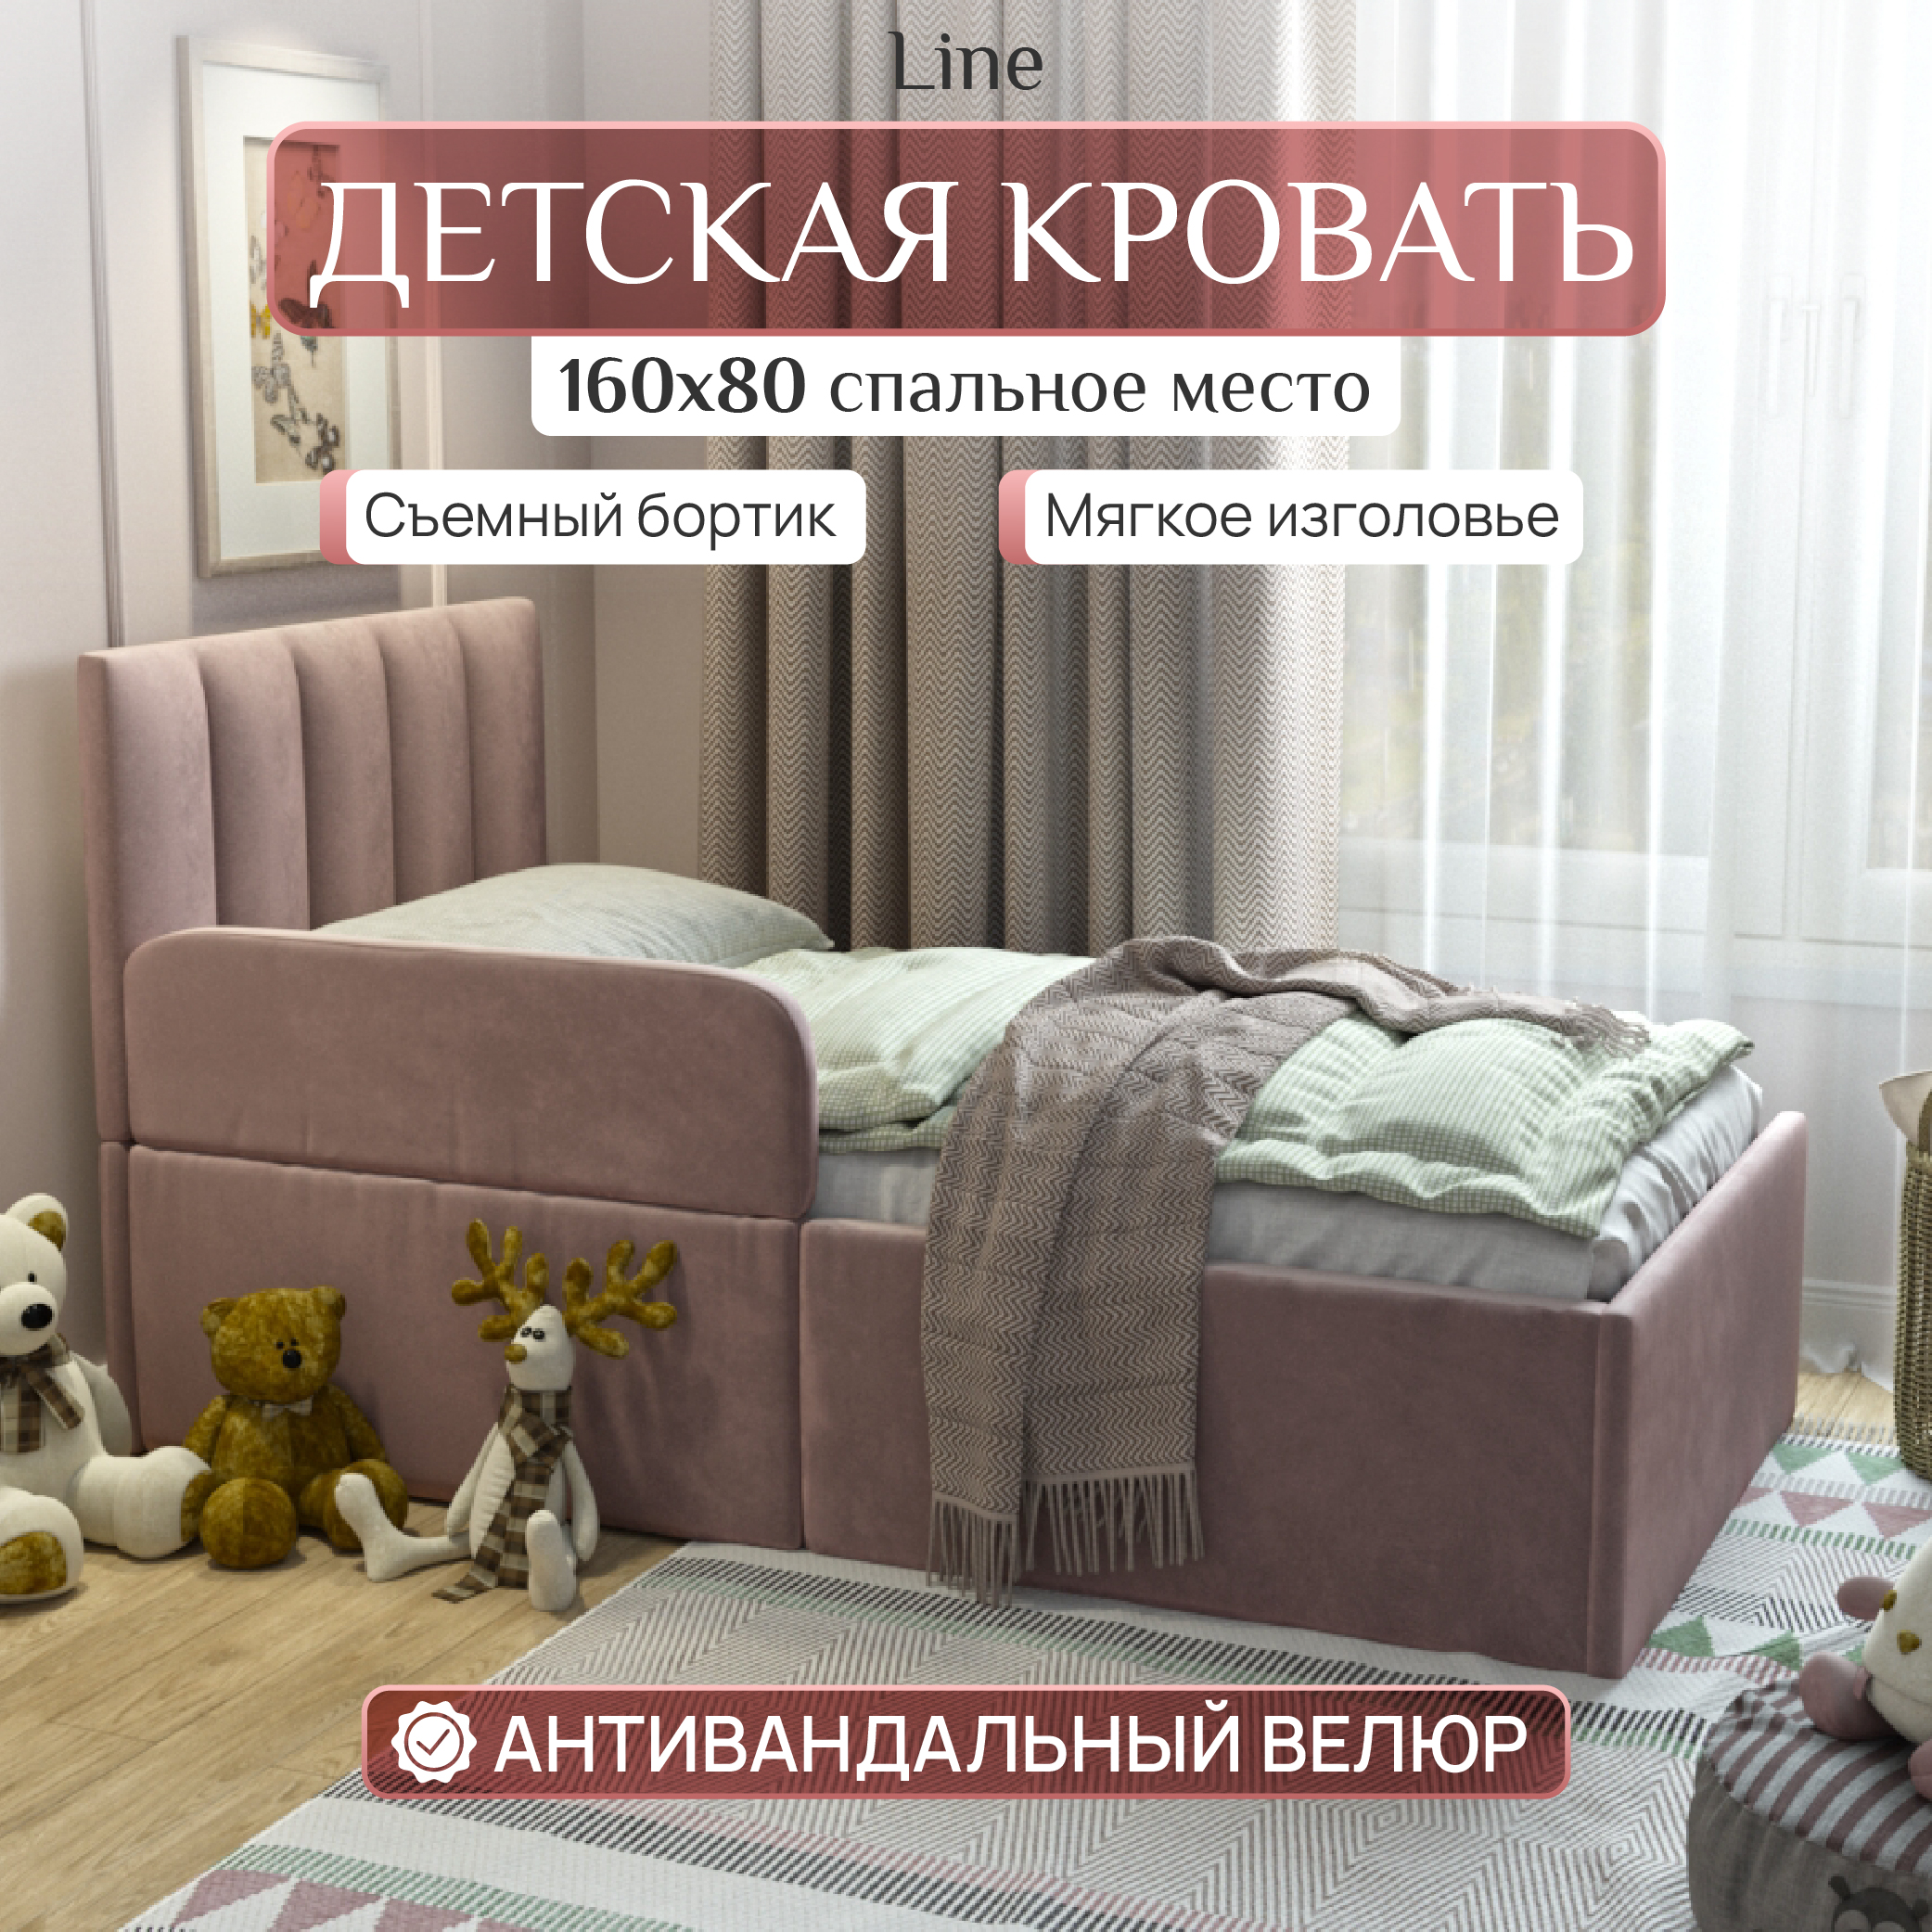 Детская кровать SleepAngel Line 160x80 см, с бортиком для детей от 3-х лет, Розовый детская кровать sweet sofa 180х90 с бортиком венге